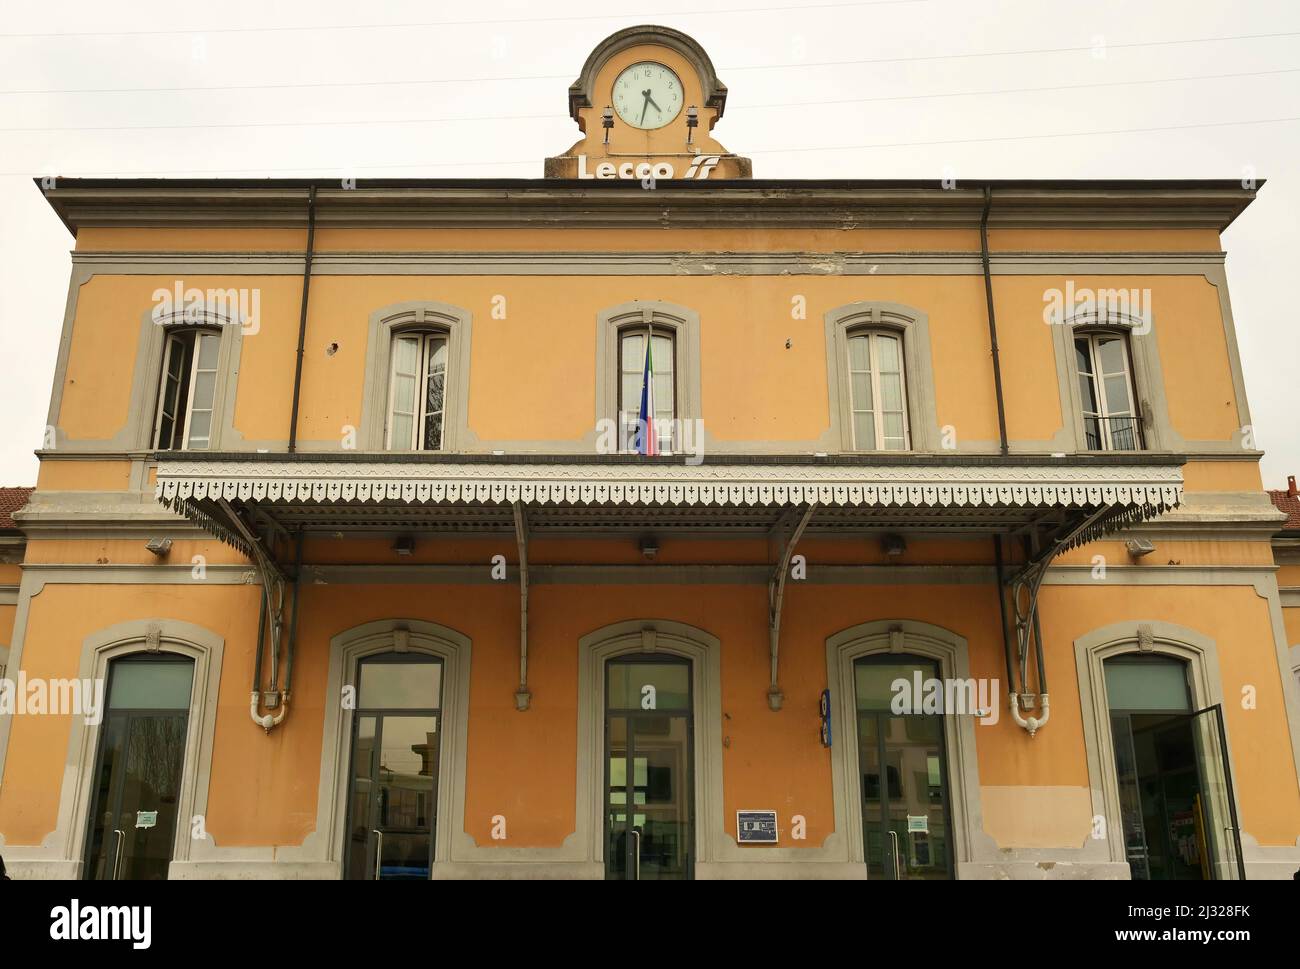 Gare de Lecco à Milan, Lombardie, Italie. Banque D'Images